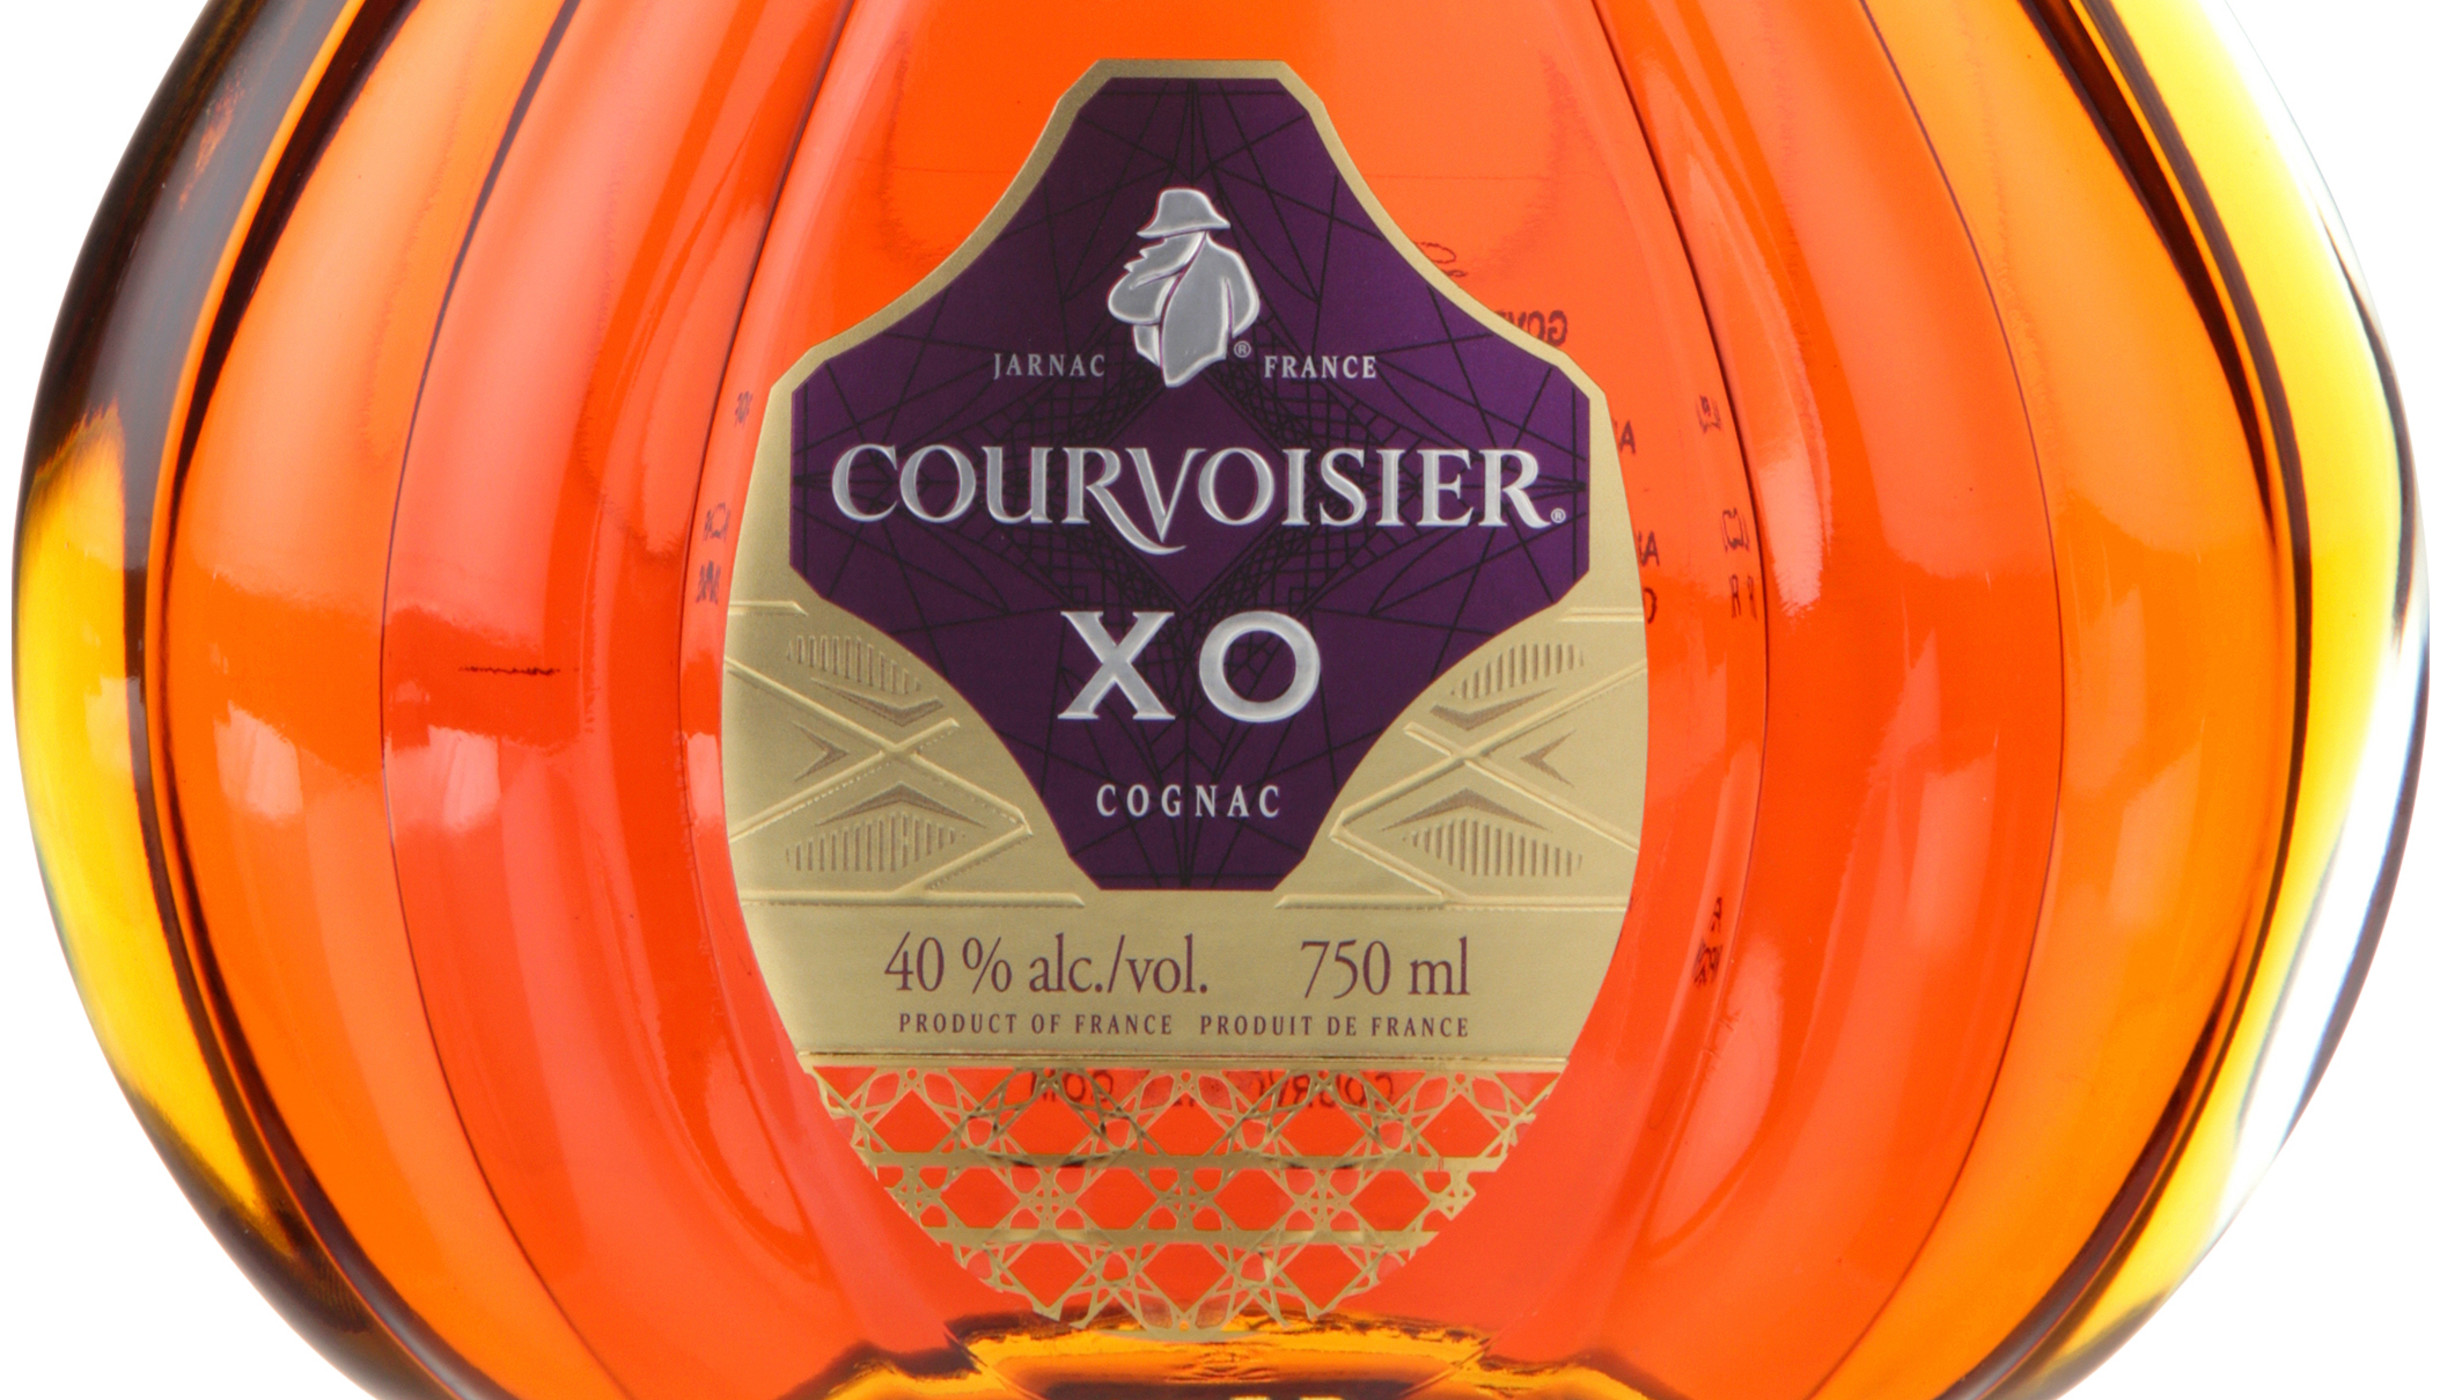 Courvoisier XO Cognac, 750.0 ml - image 4 of 4